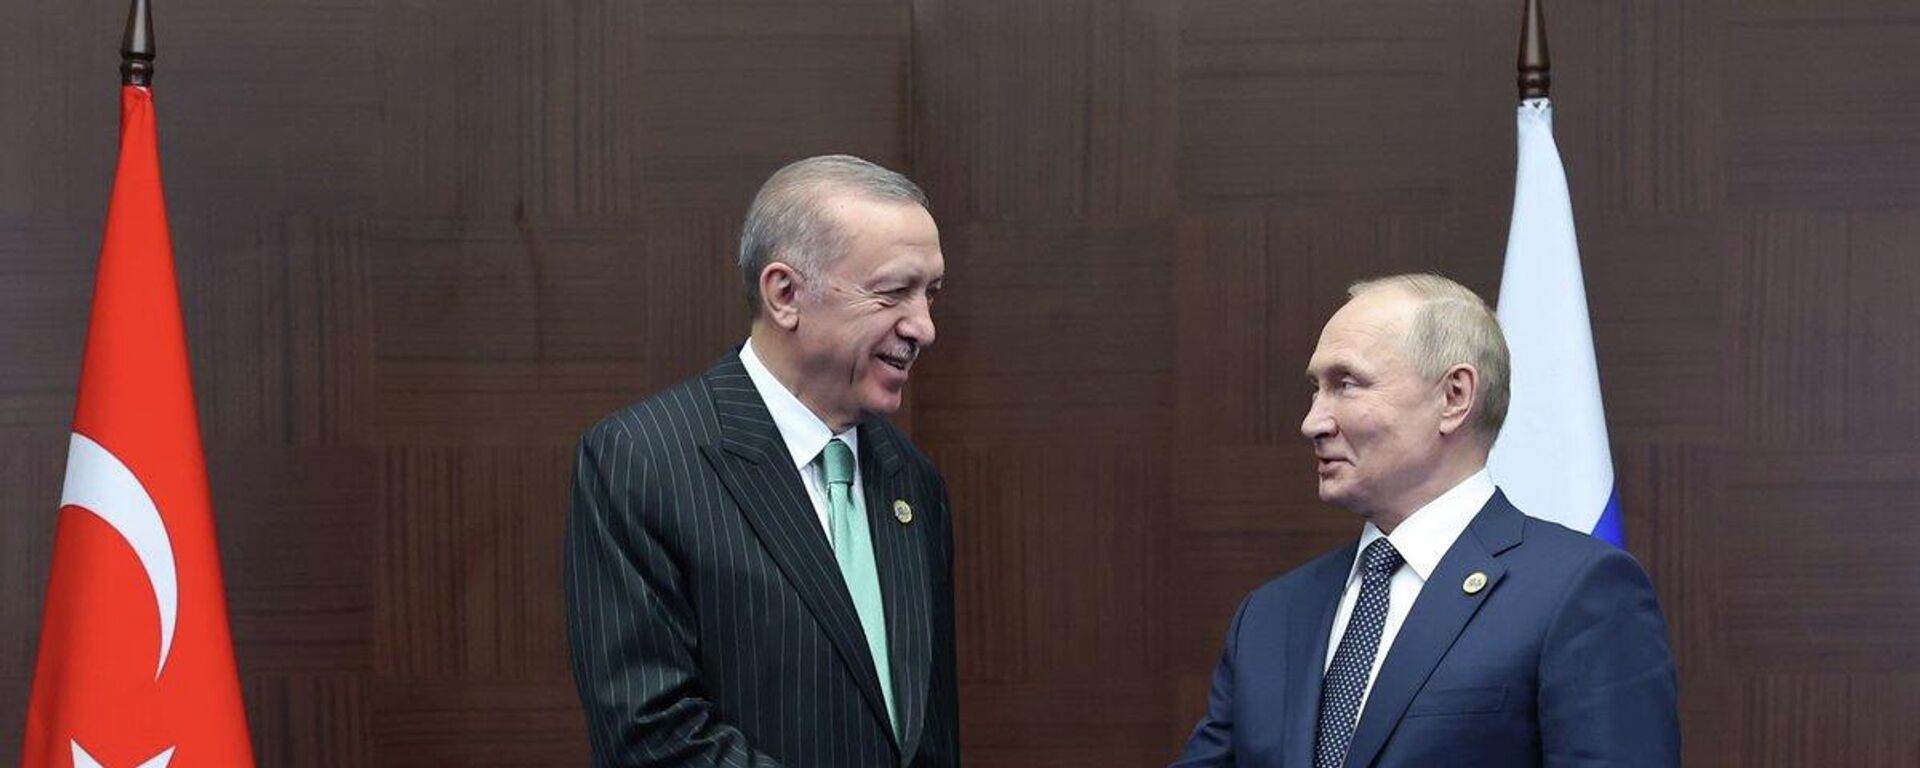 Cumhurbaşkanı Recep Tayyip Erdoğan, Astana'daki CICA Zirvesi kapsamında Rusya Devlet Başkanı Vladimir Putin ile bir araya geldi. - Sputnik Türkiye, 1920, 13.10.2022